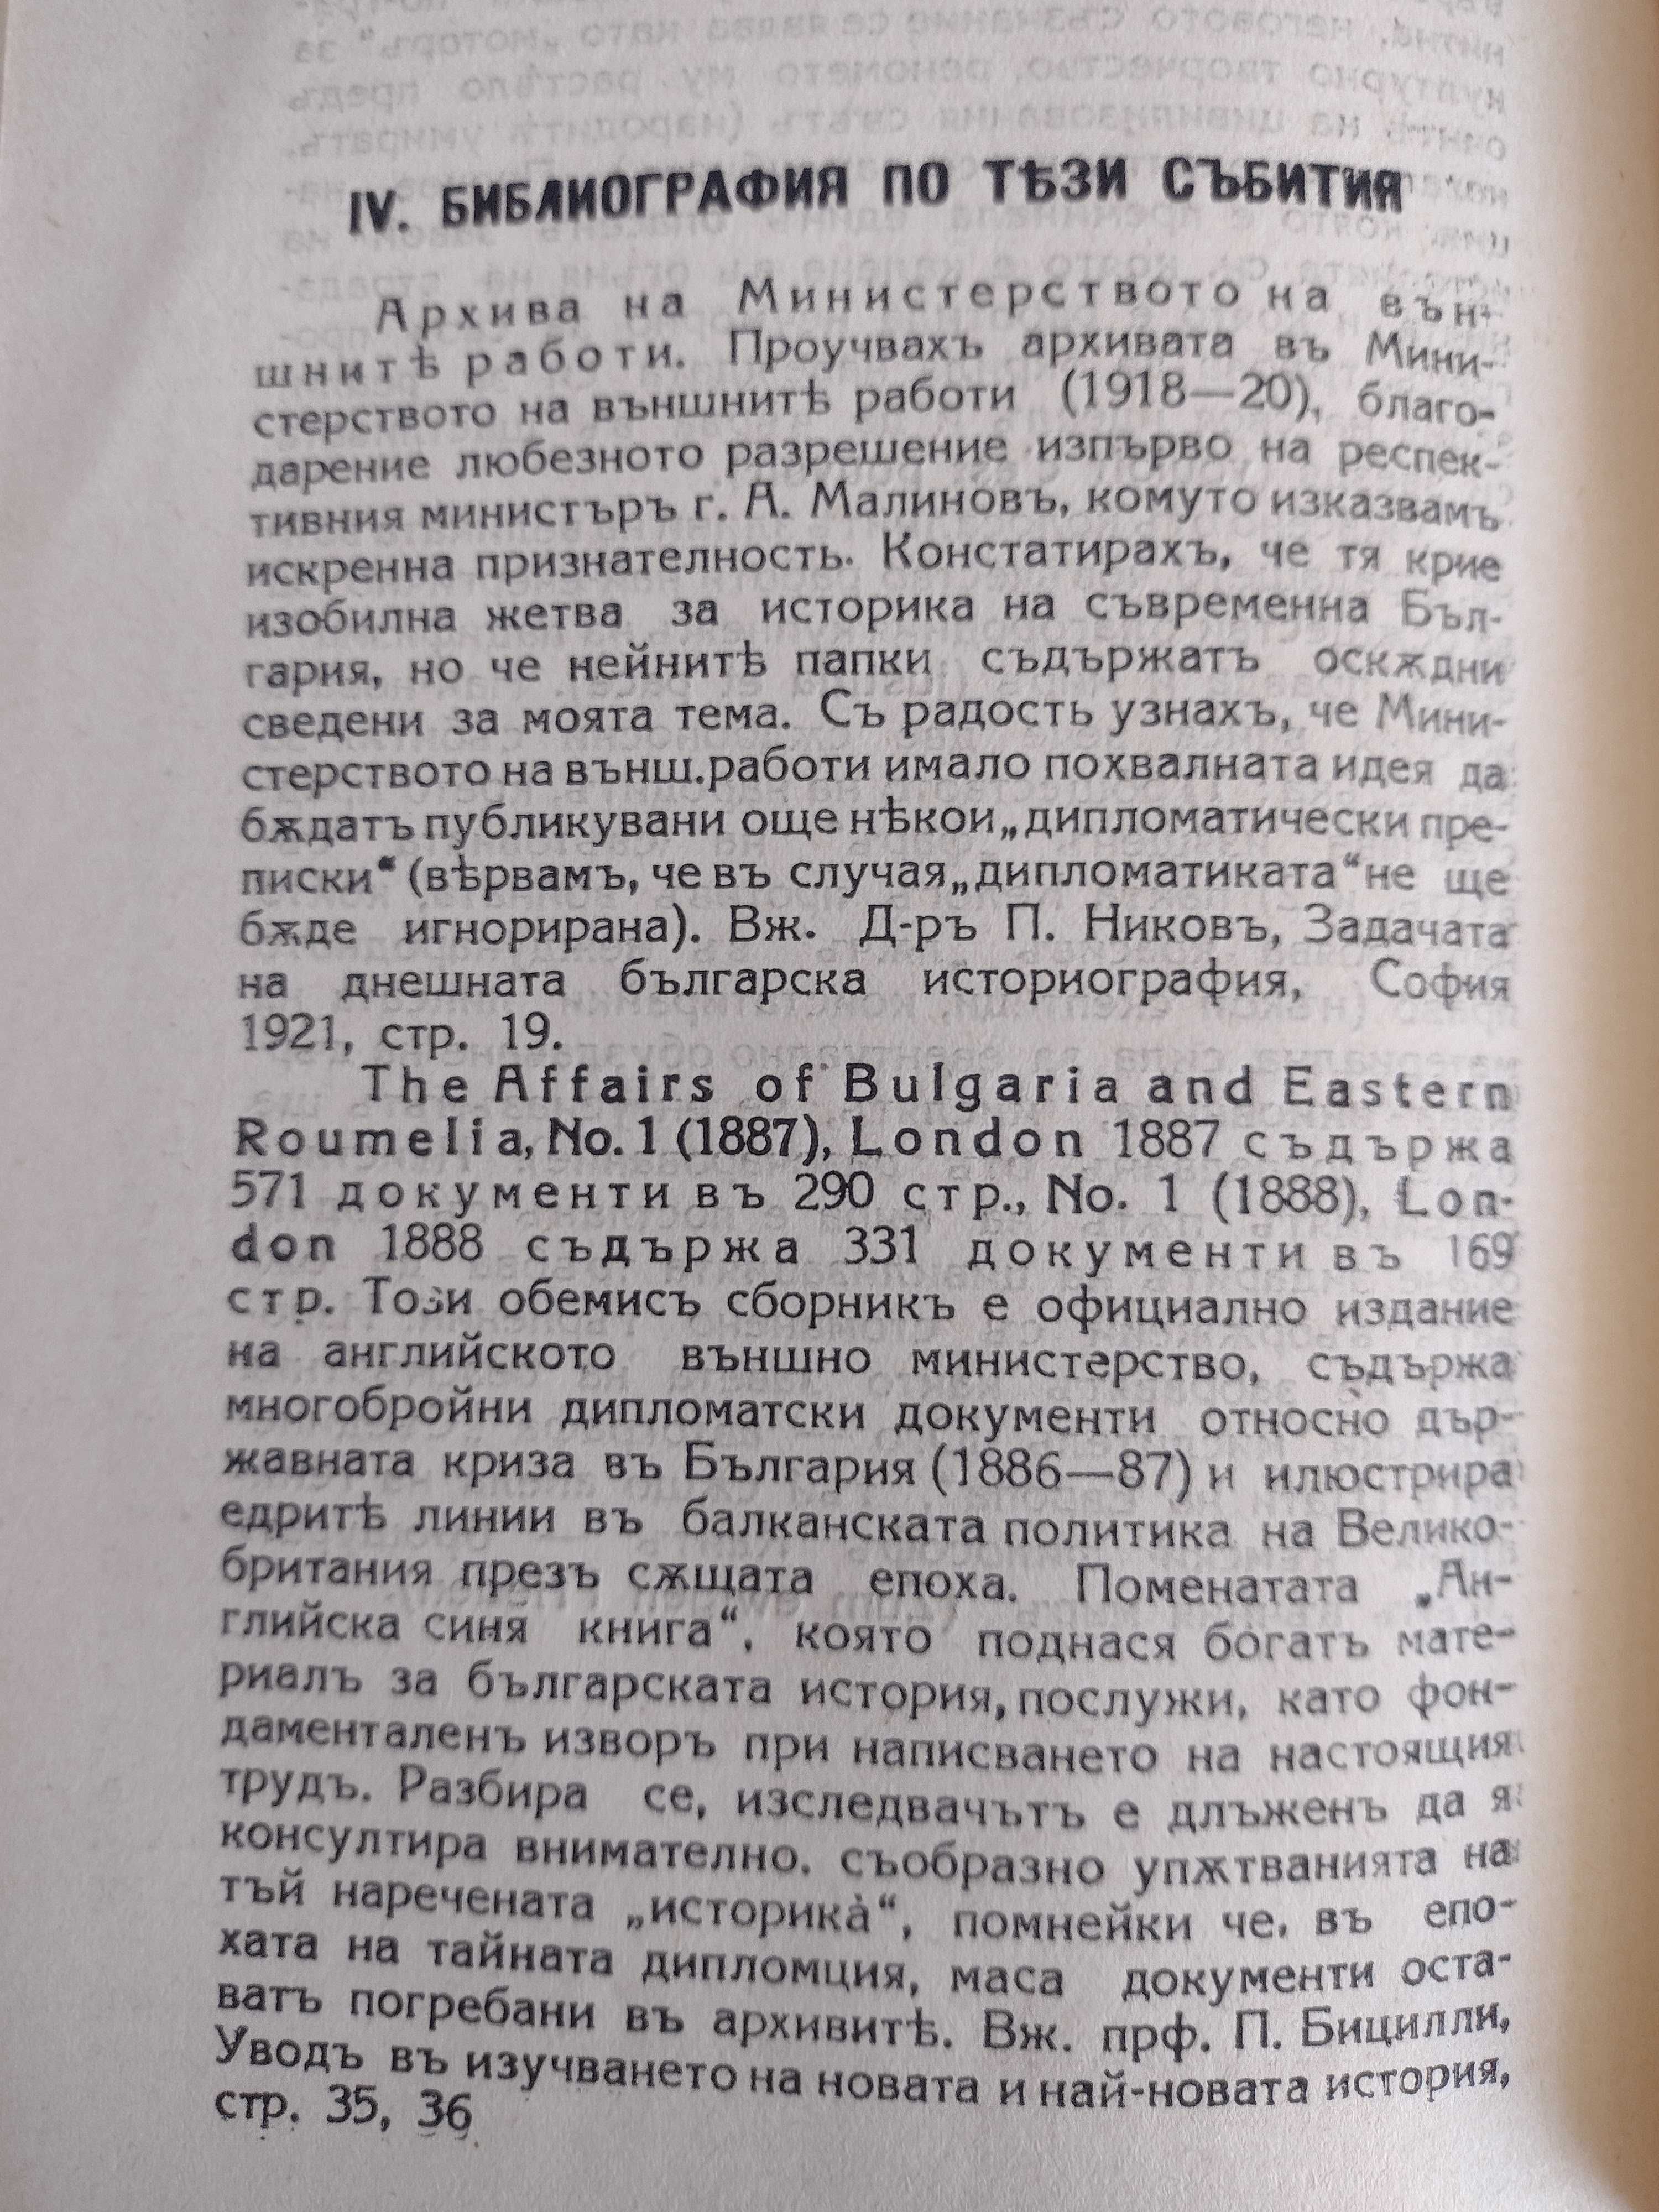 Дипломатична история на България (1886 -1915) - Кр. Крачунов, 1928г.